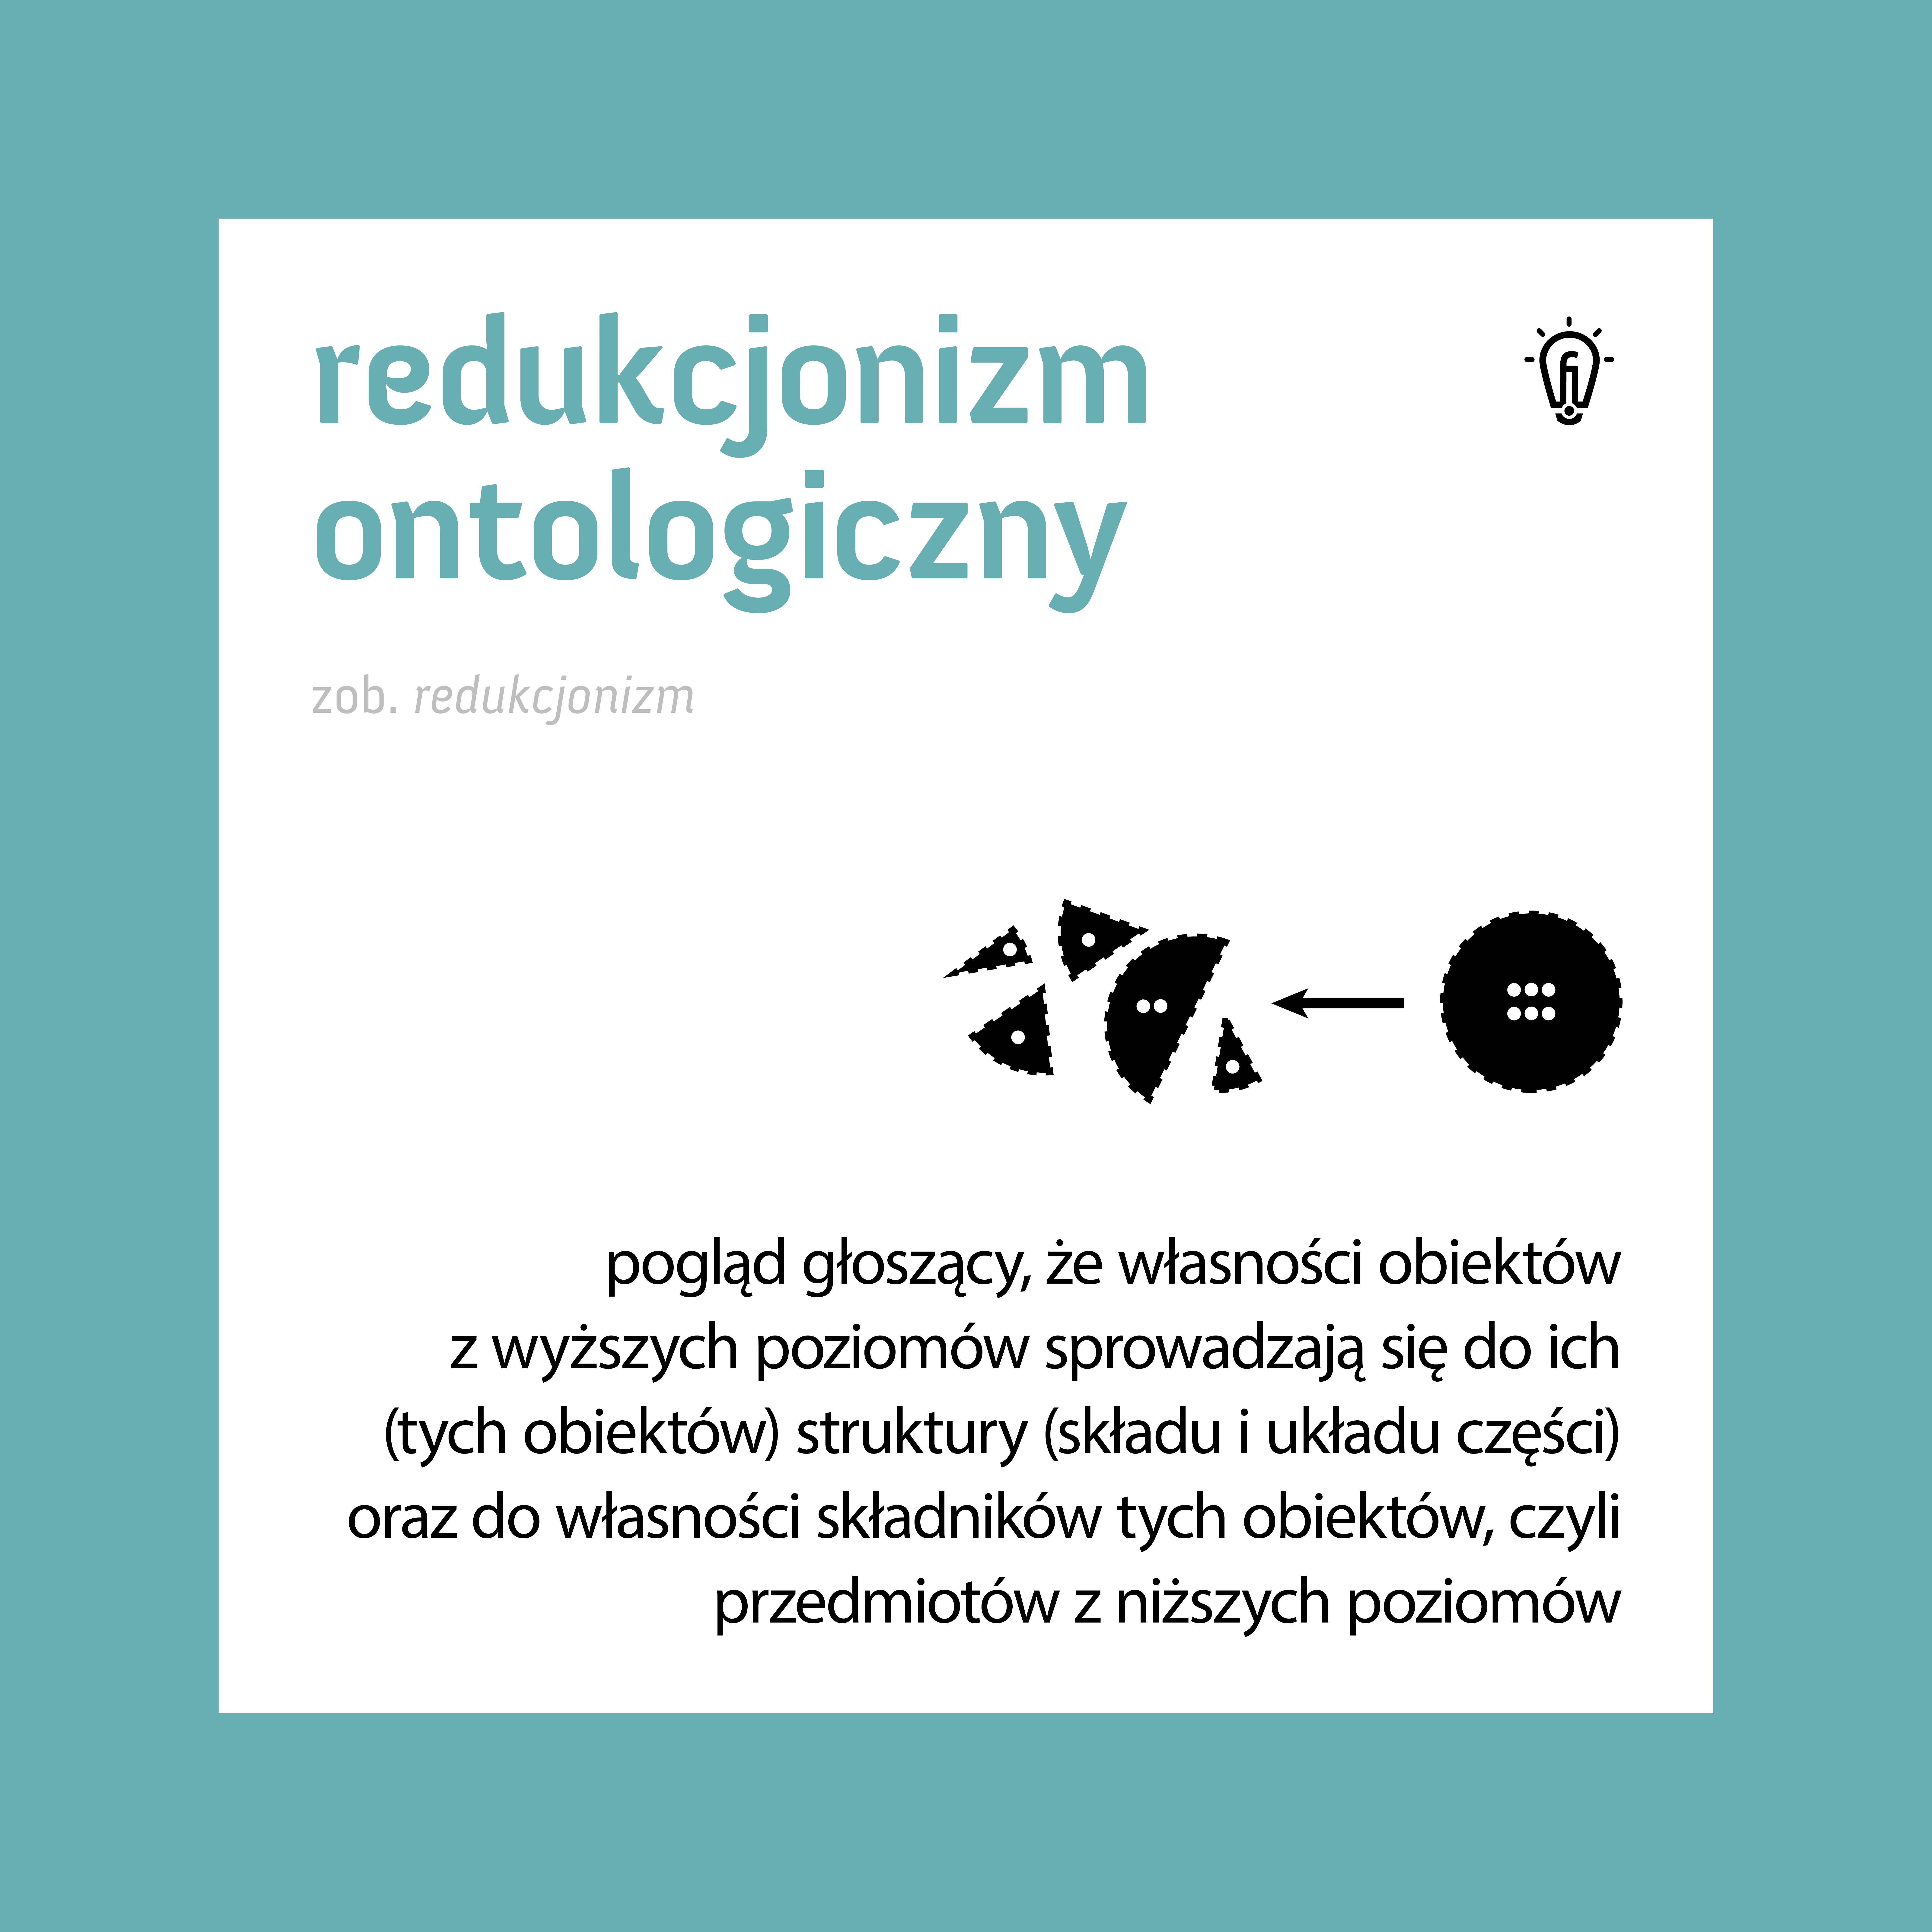 022_redukcjonizm_ontologiczny